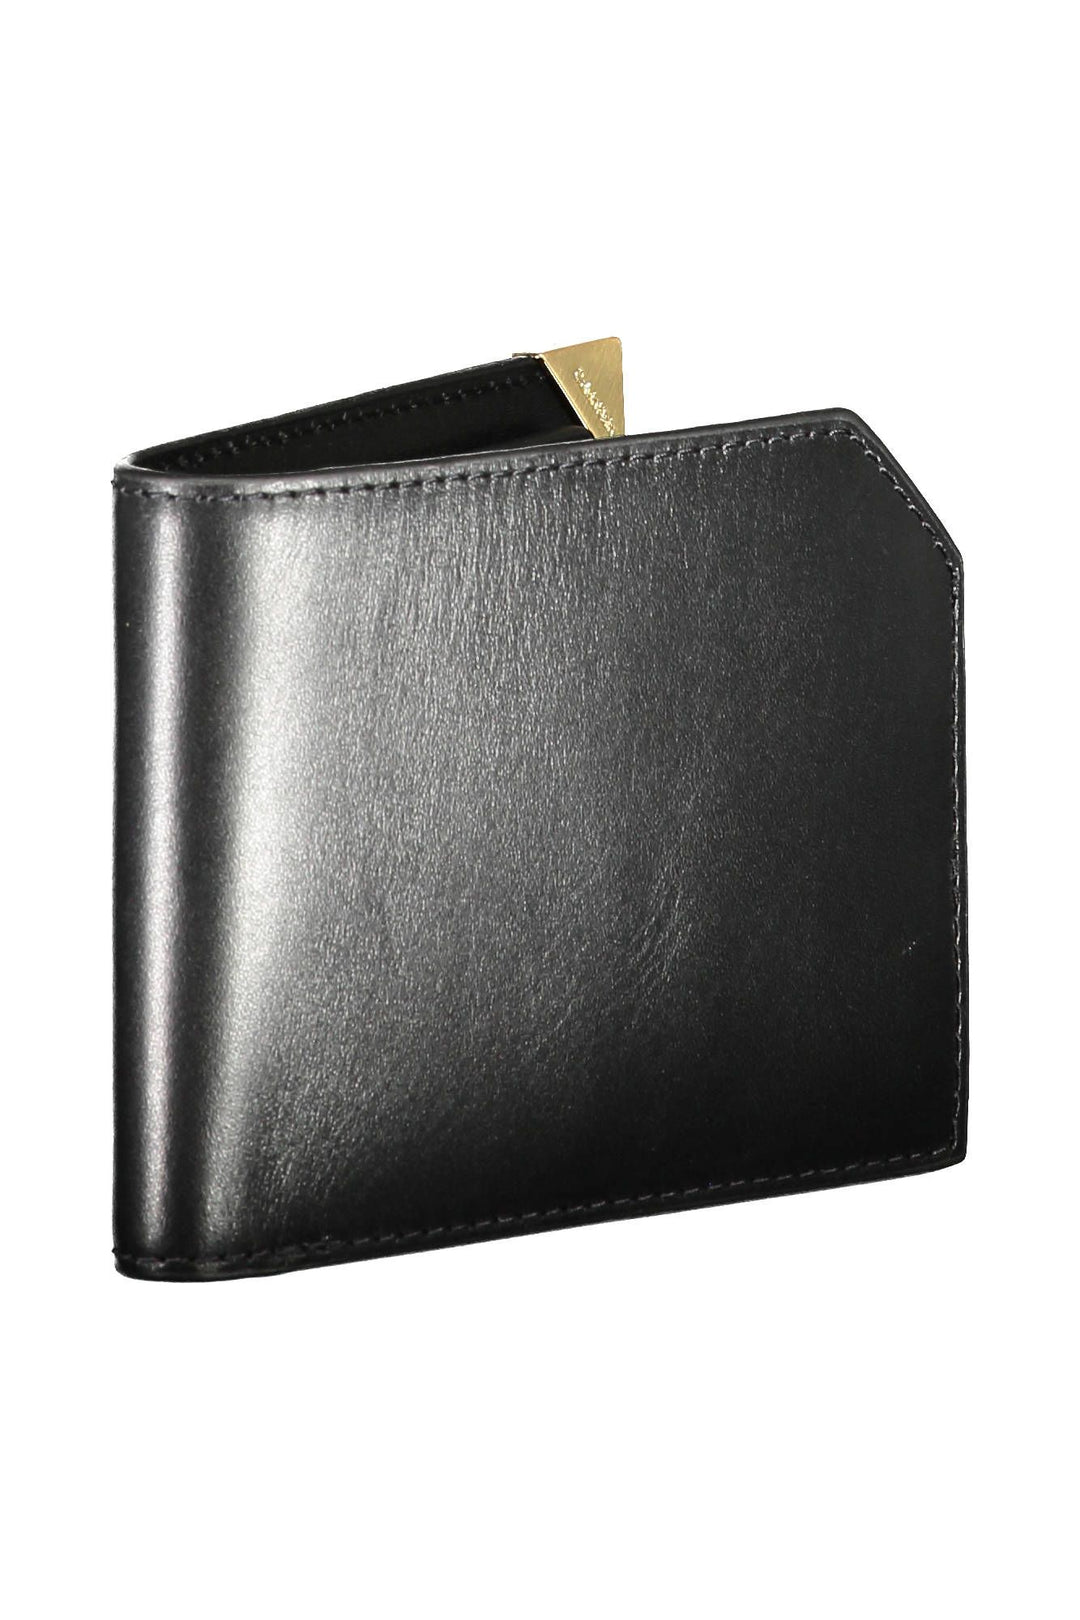 Calvin Klein Sleek RFID-Protected Black Leather Wallet